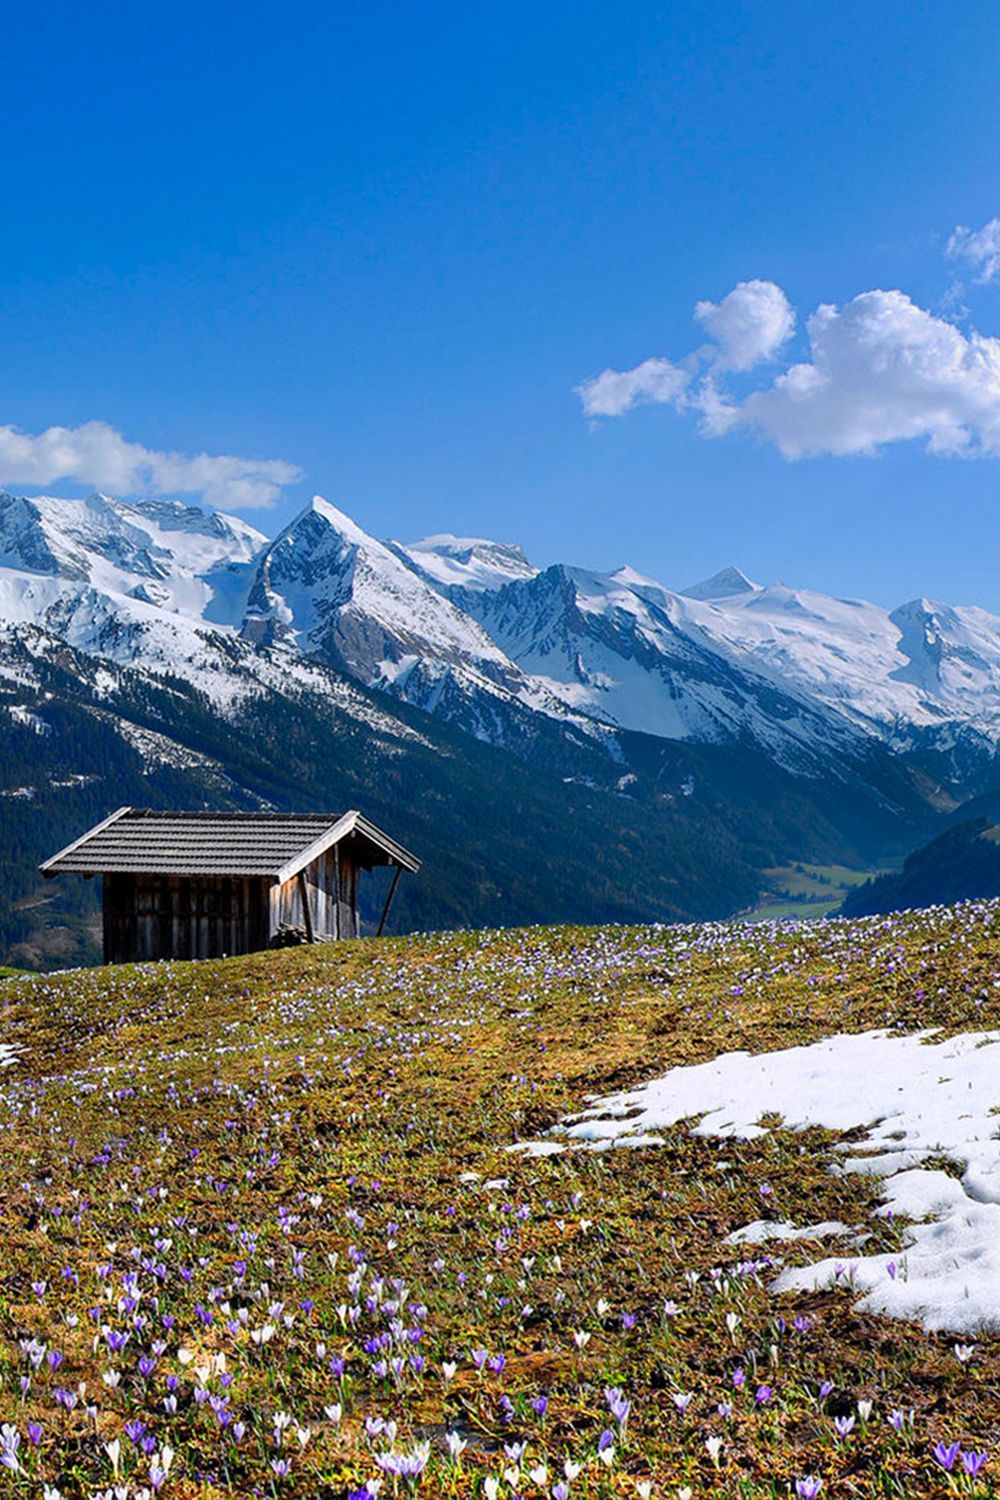  Alpen Hintergrundbild 1000x1500. Pin auf Wallpaper & Hintergrundbilder: Landschaften, Berge